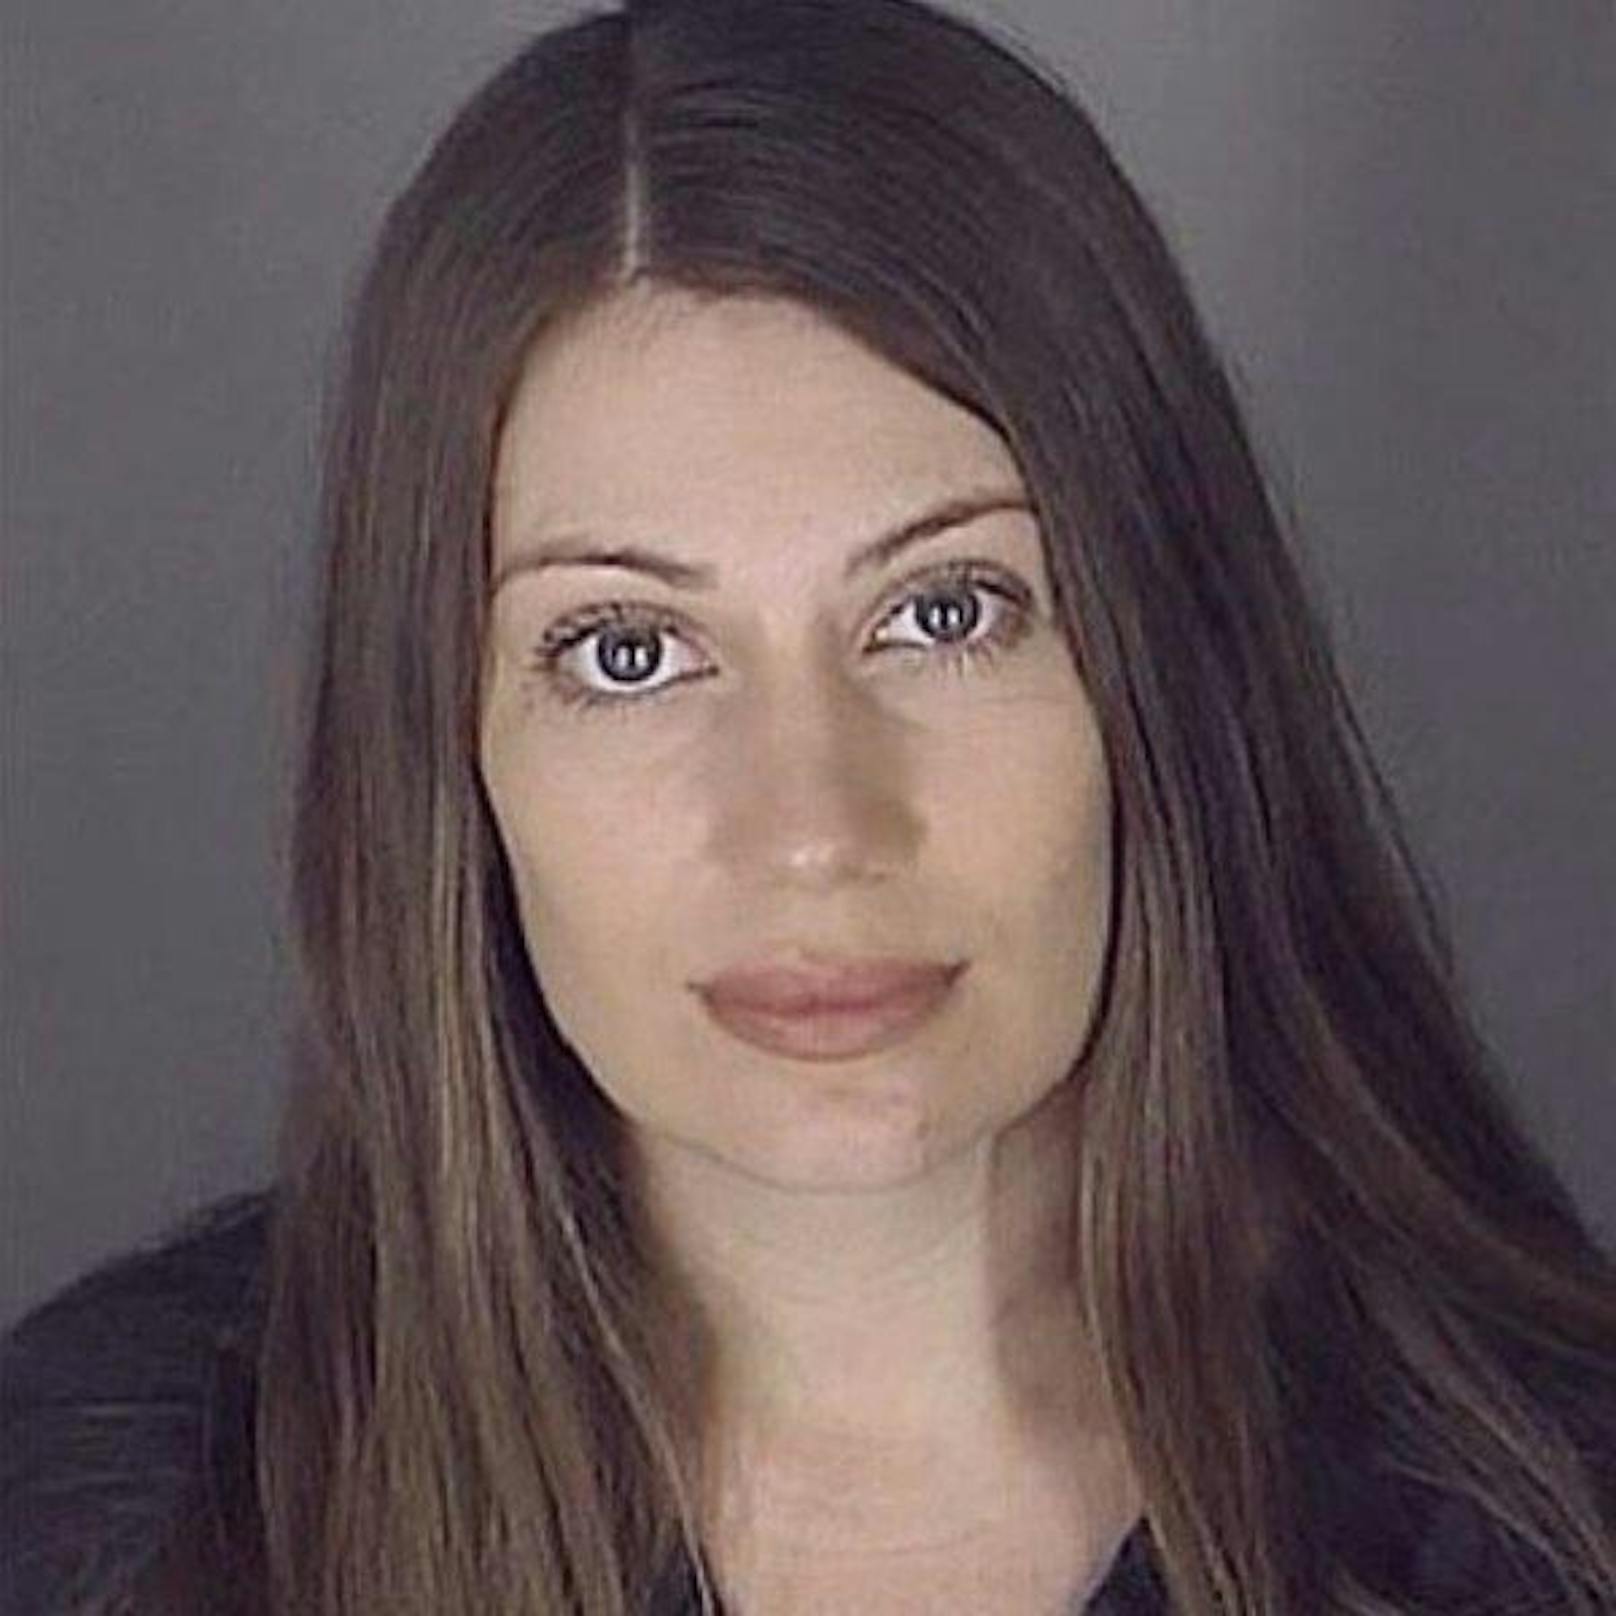 Diese Dame muss für 30 Jahre ins Gefängnis. Sie hatte Sex mit ihrem minderjährigen Sohn.